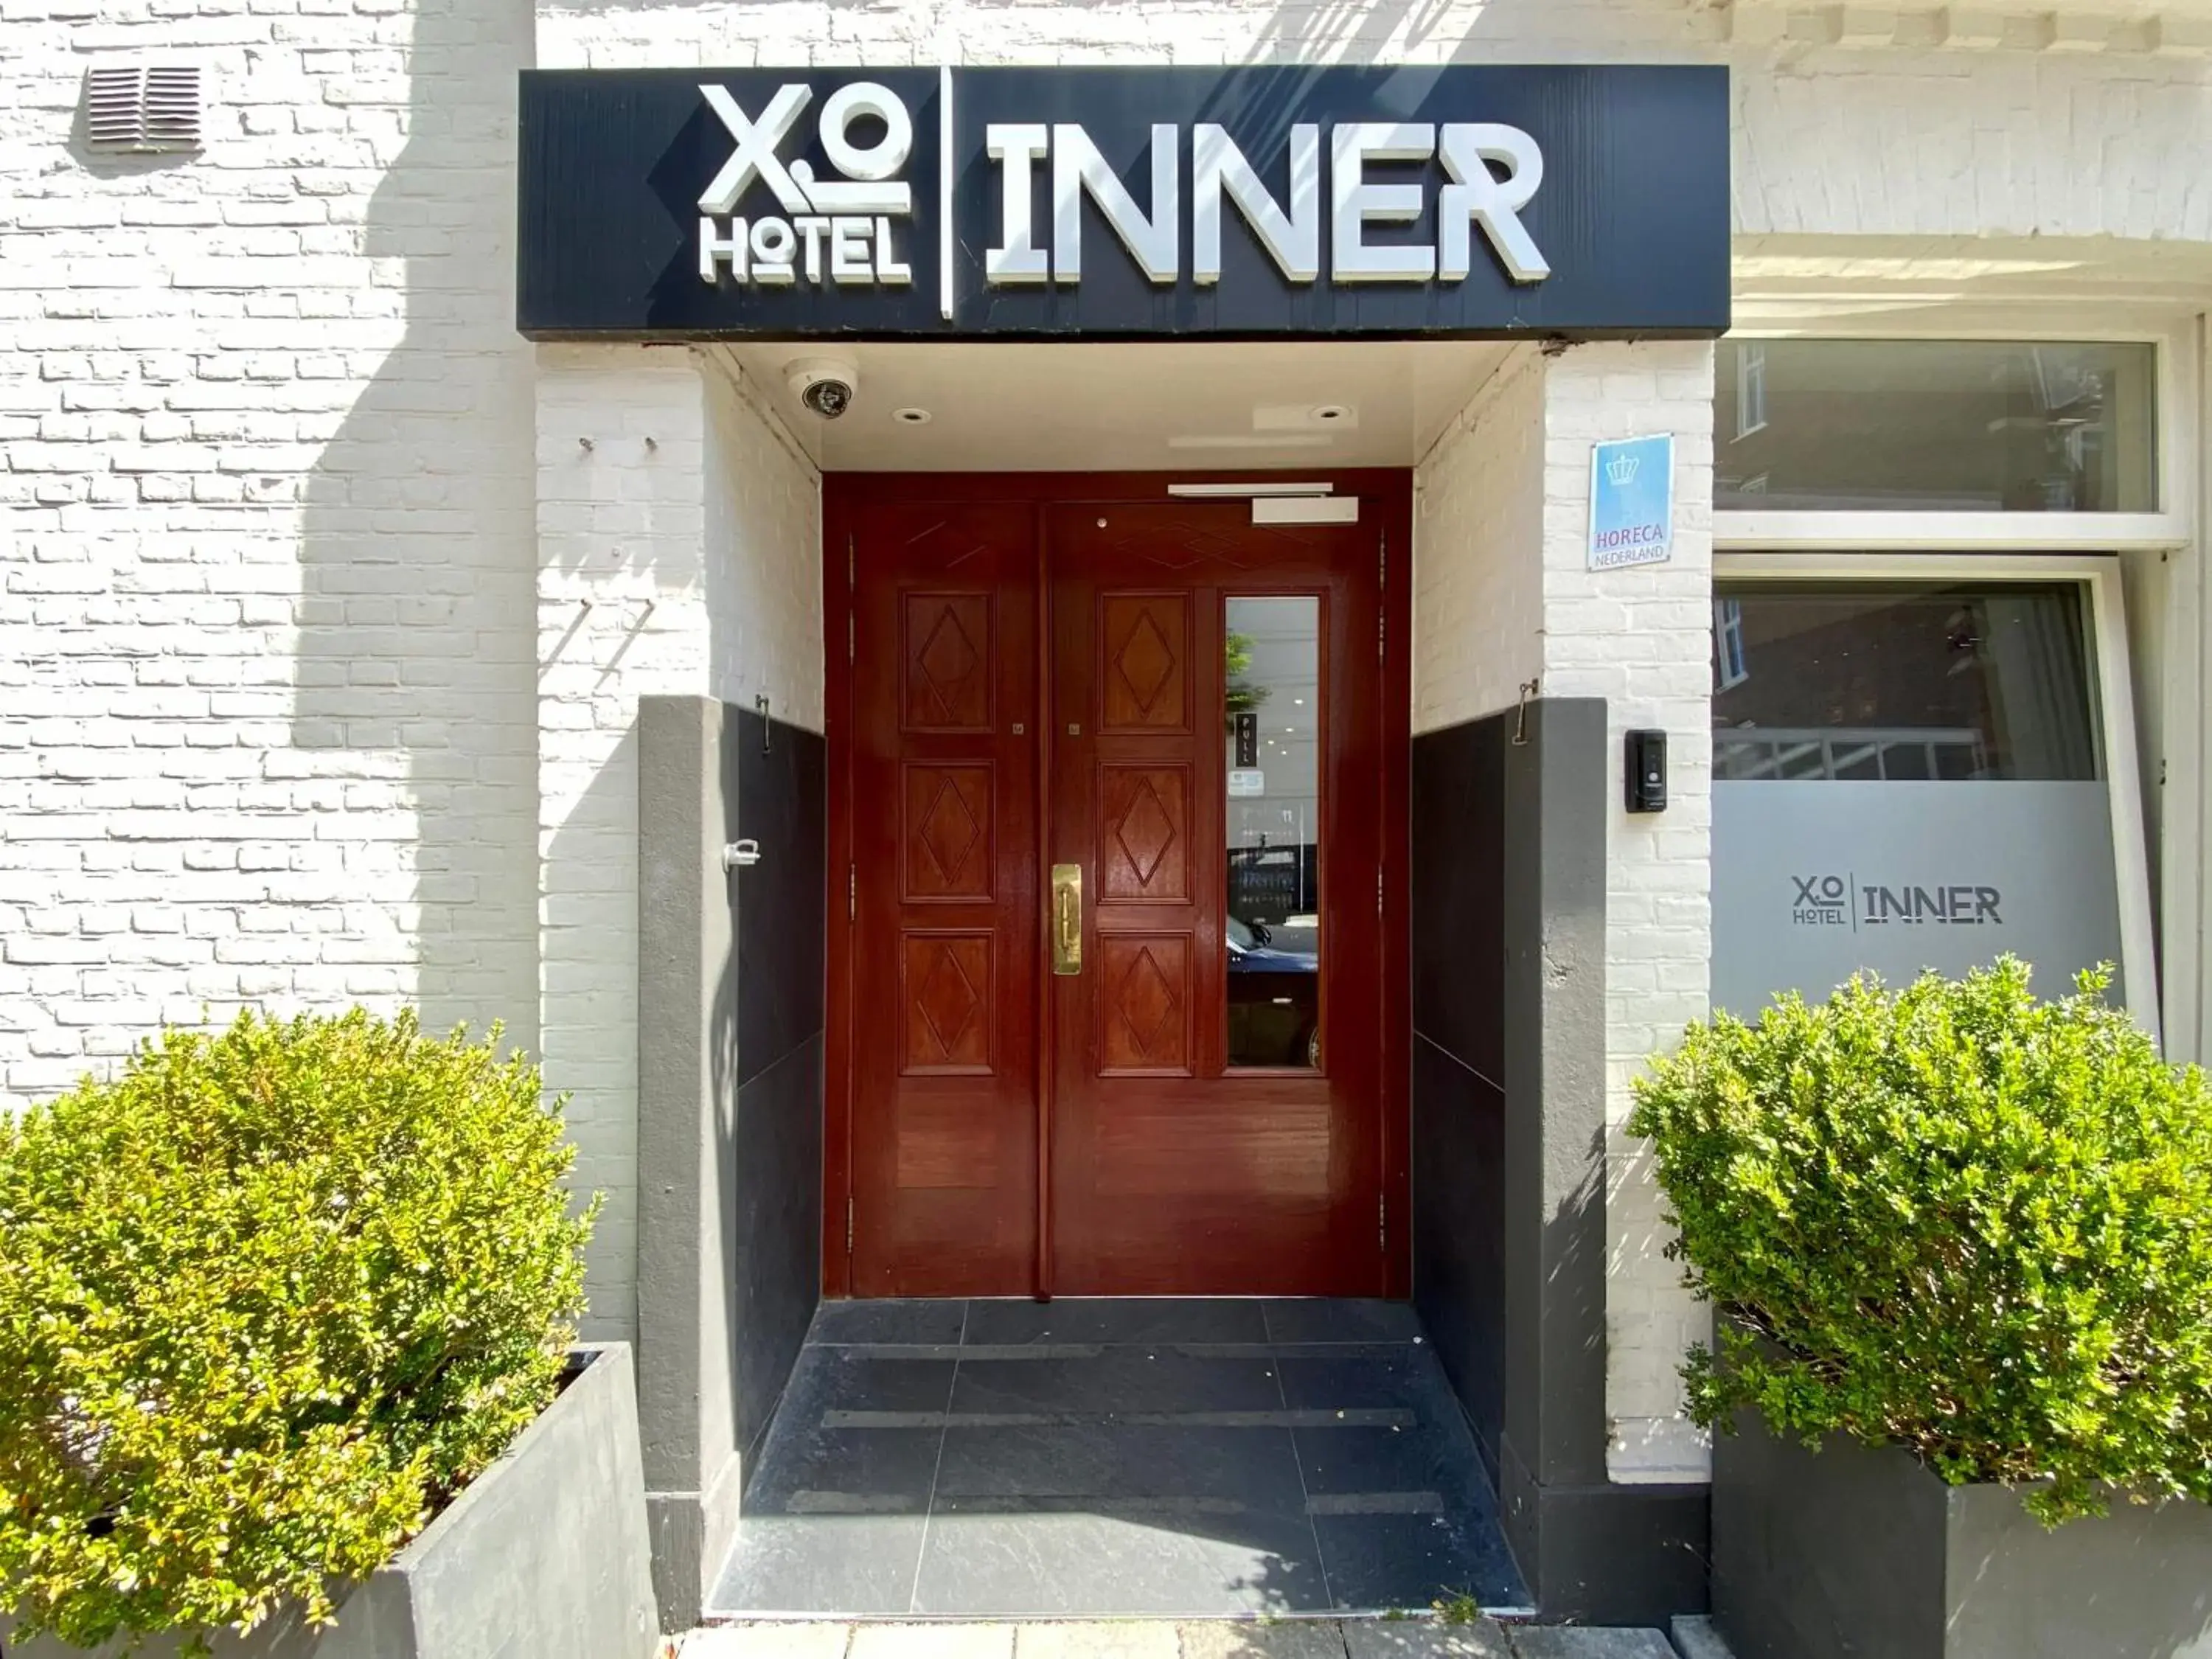 Facade/Entrance in XO Hotel Inner